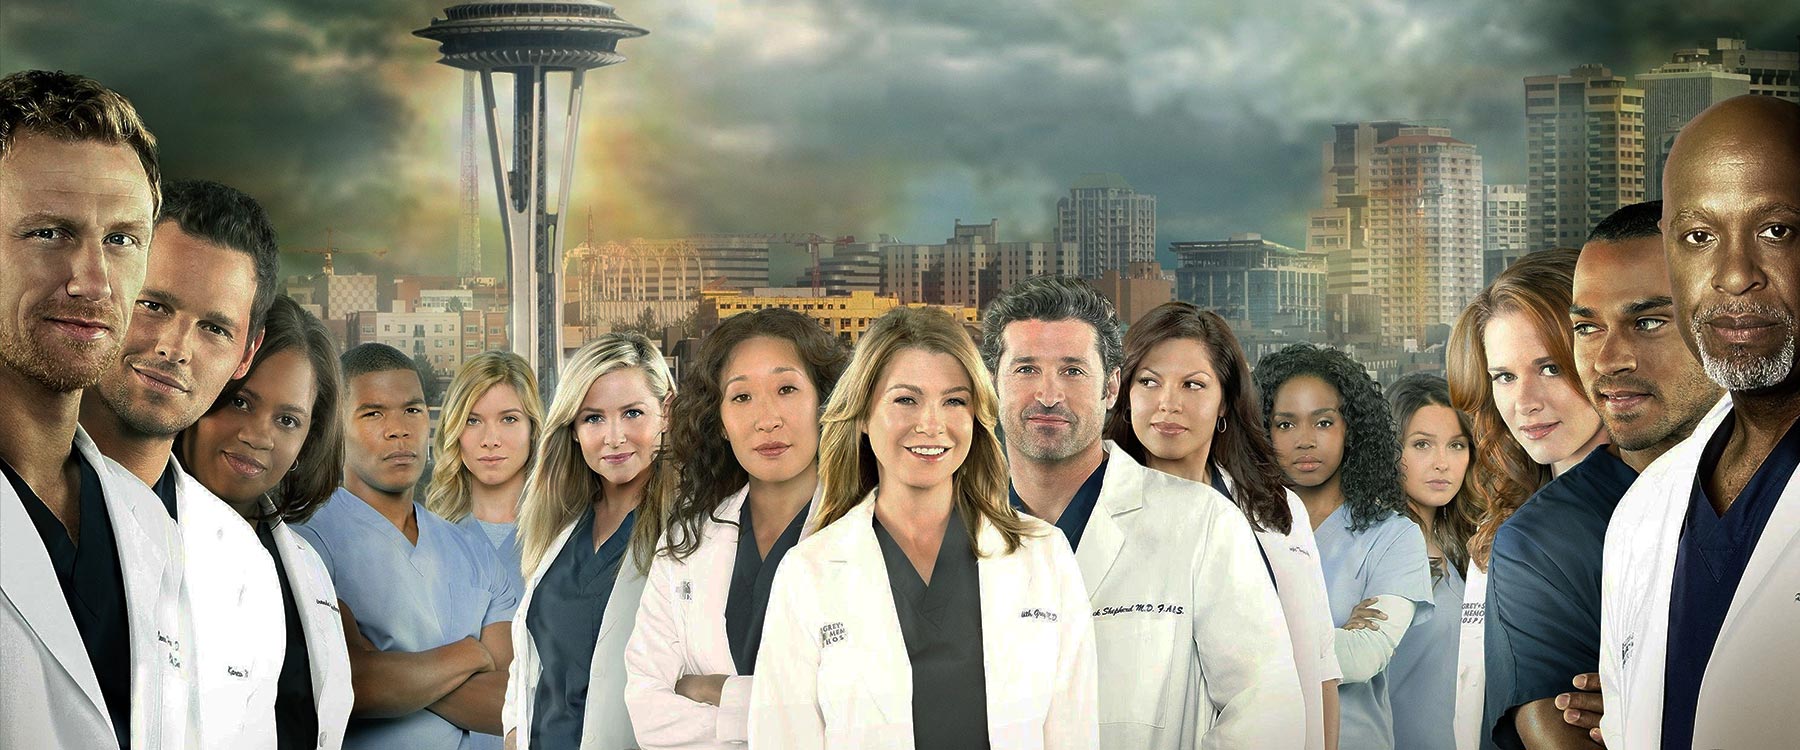 A Grace klinika (Grey's Anatomy)